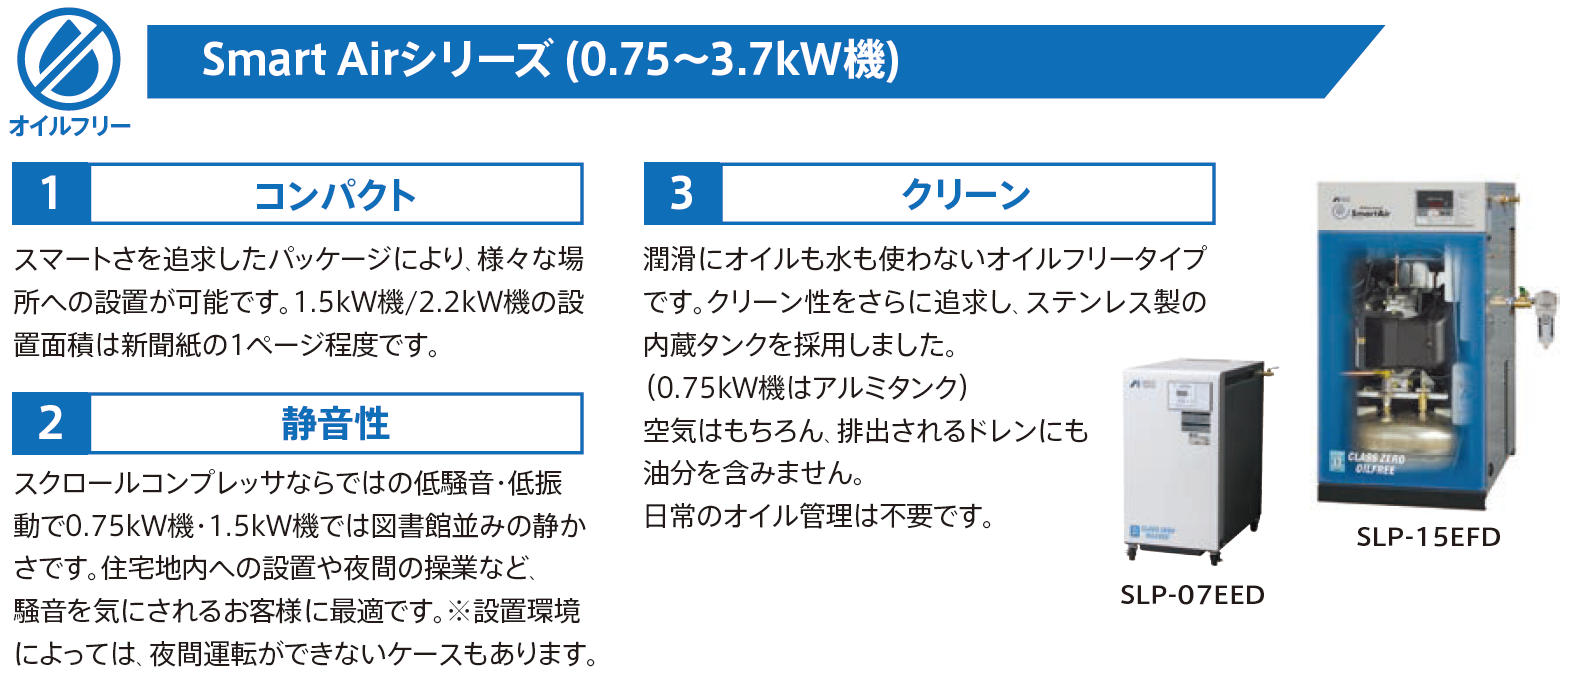 人気商品ランキング アネスト岩田 コンプレッサ スクロール SLP-15EFM6 200V 60Hz オイルフリー